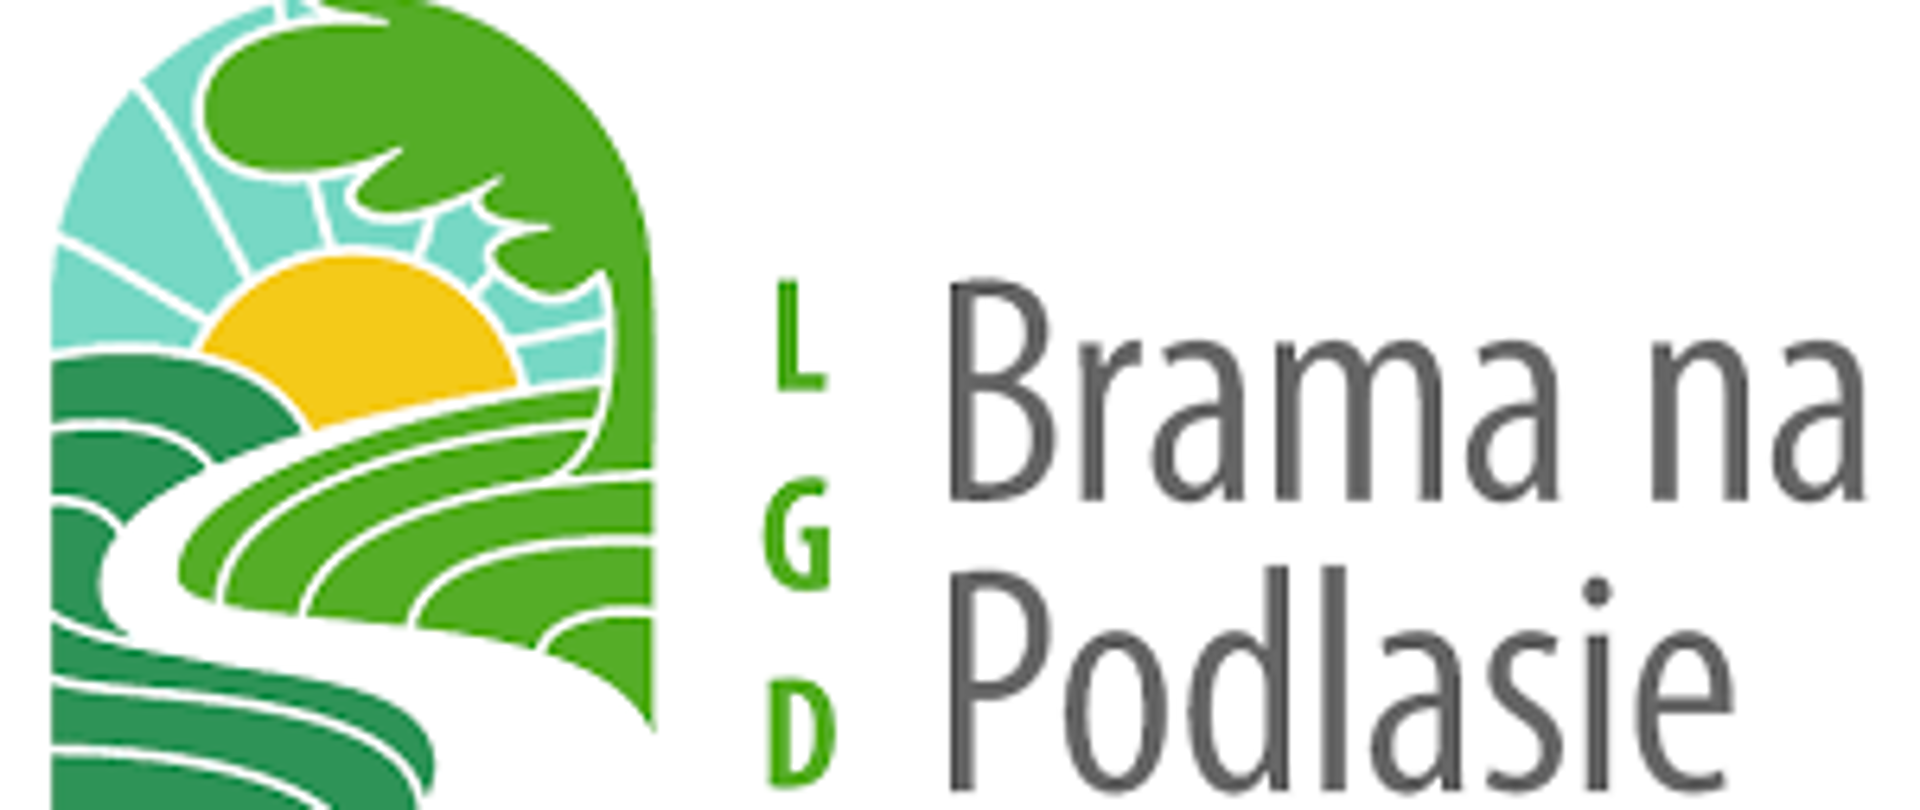 Logo Lokalnej Grupy Działania Brama na Podlasie przedstawiające wijącą się wśród zielonych pól drogę kierującą się w stronę słońca oraz zawierającą część tekstową LGD Brama na Podlasie